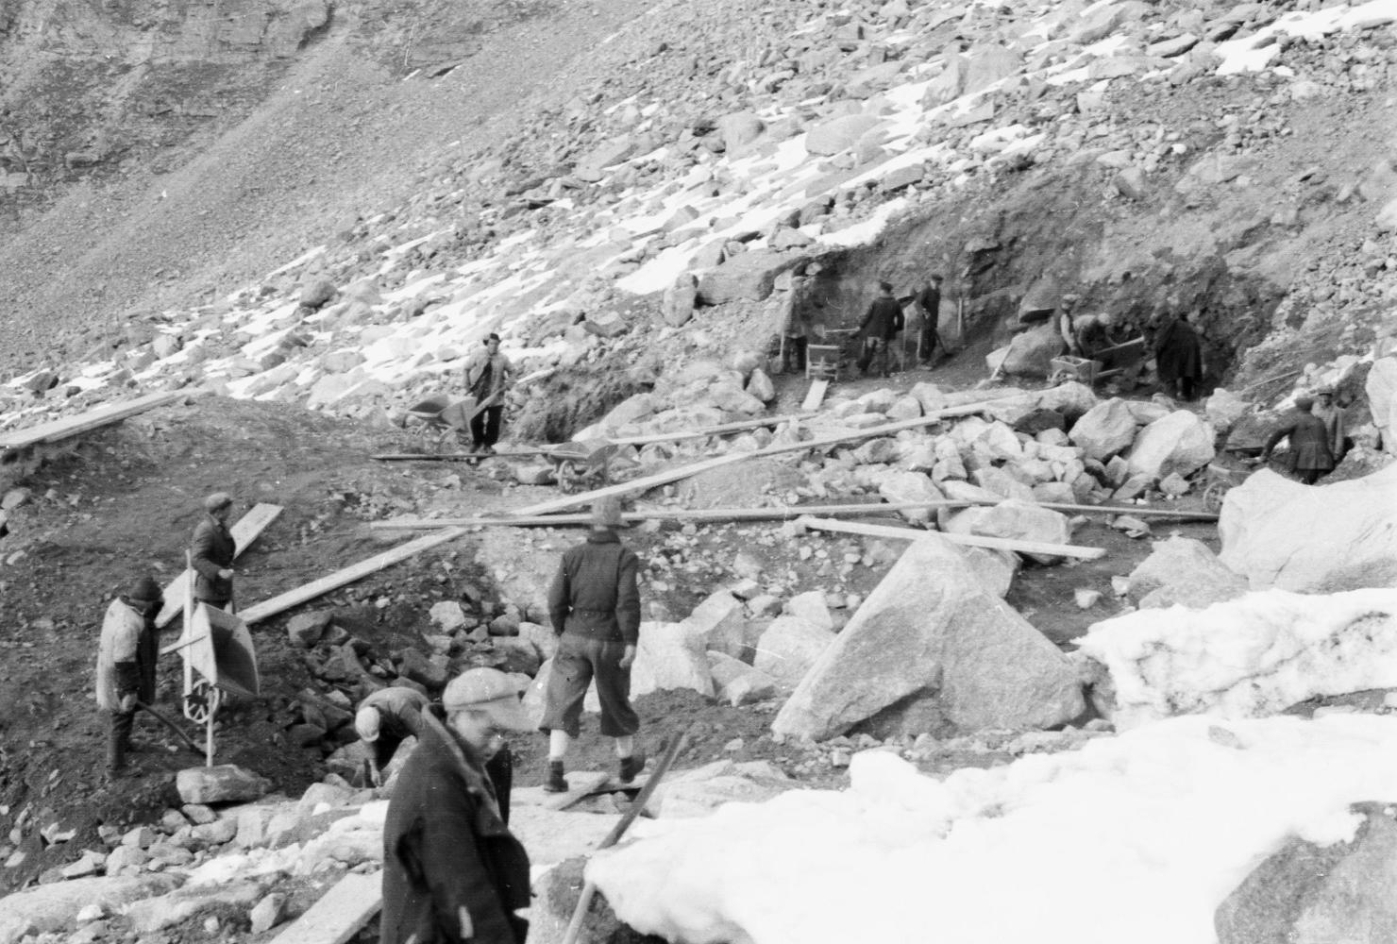 Auf dem Bild sind mehrere Zwangsarbeiter zu sehen, welche im Hochgebirge Steine aus dem Fels schlagen und abtransportieren.